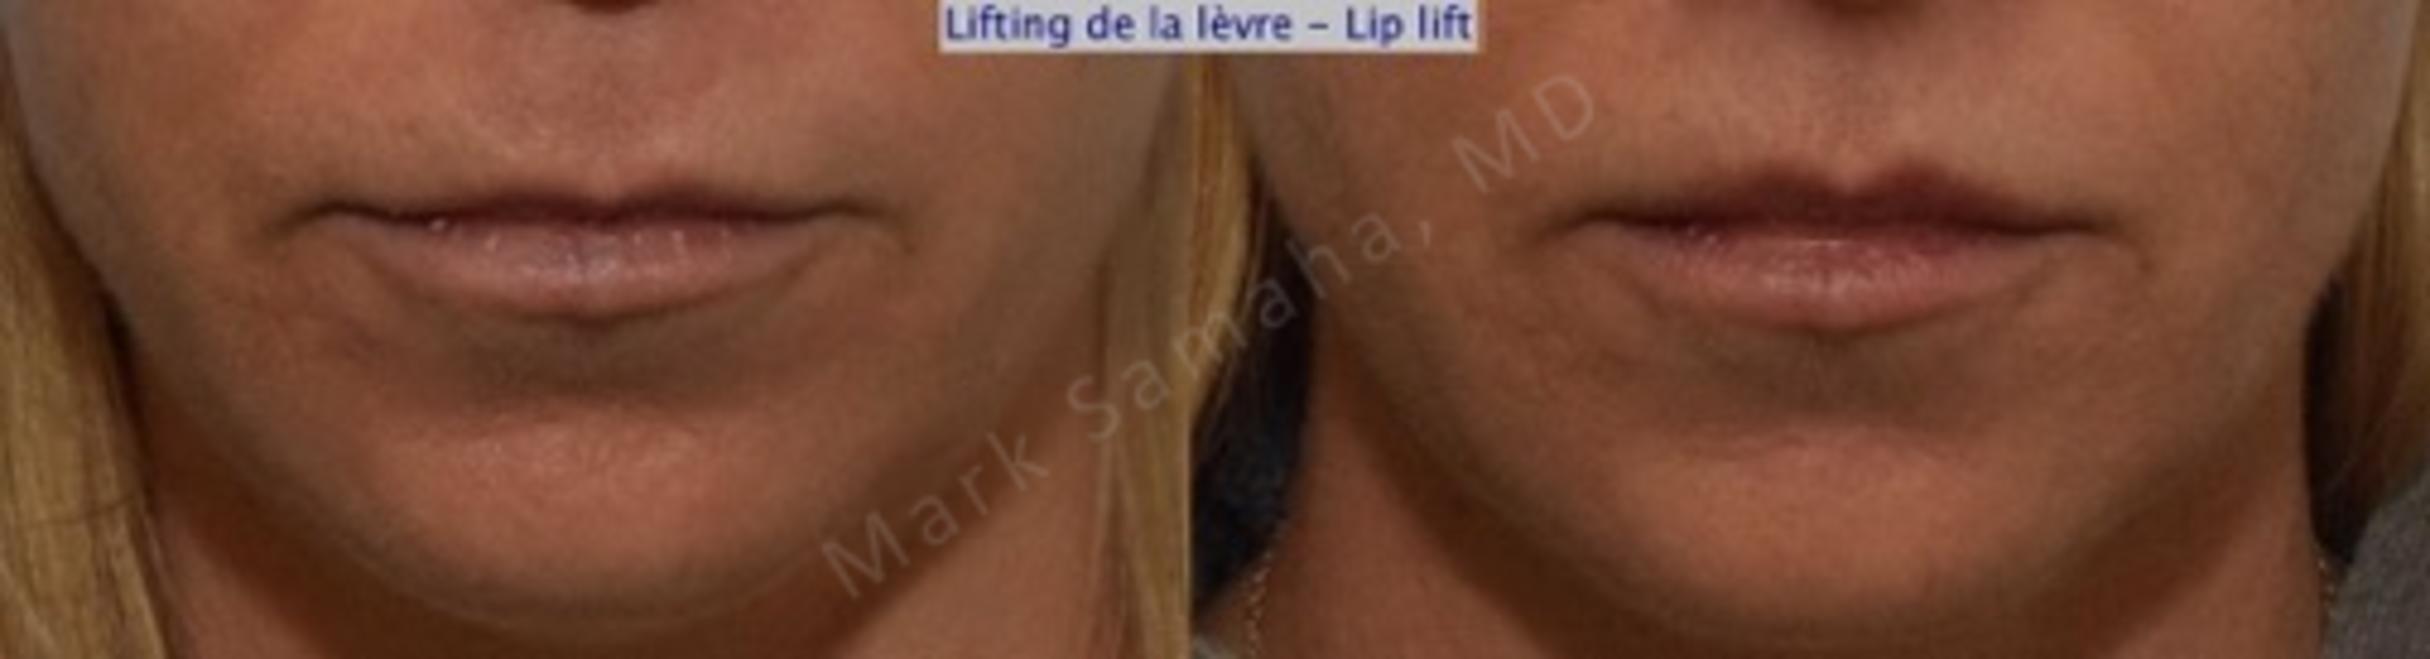 Before & After Lip Lift / Lifting de la lèvre supérieure Case 115 View #1 View in Mount Royal, QC